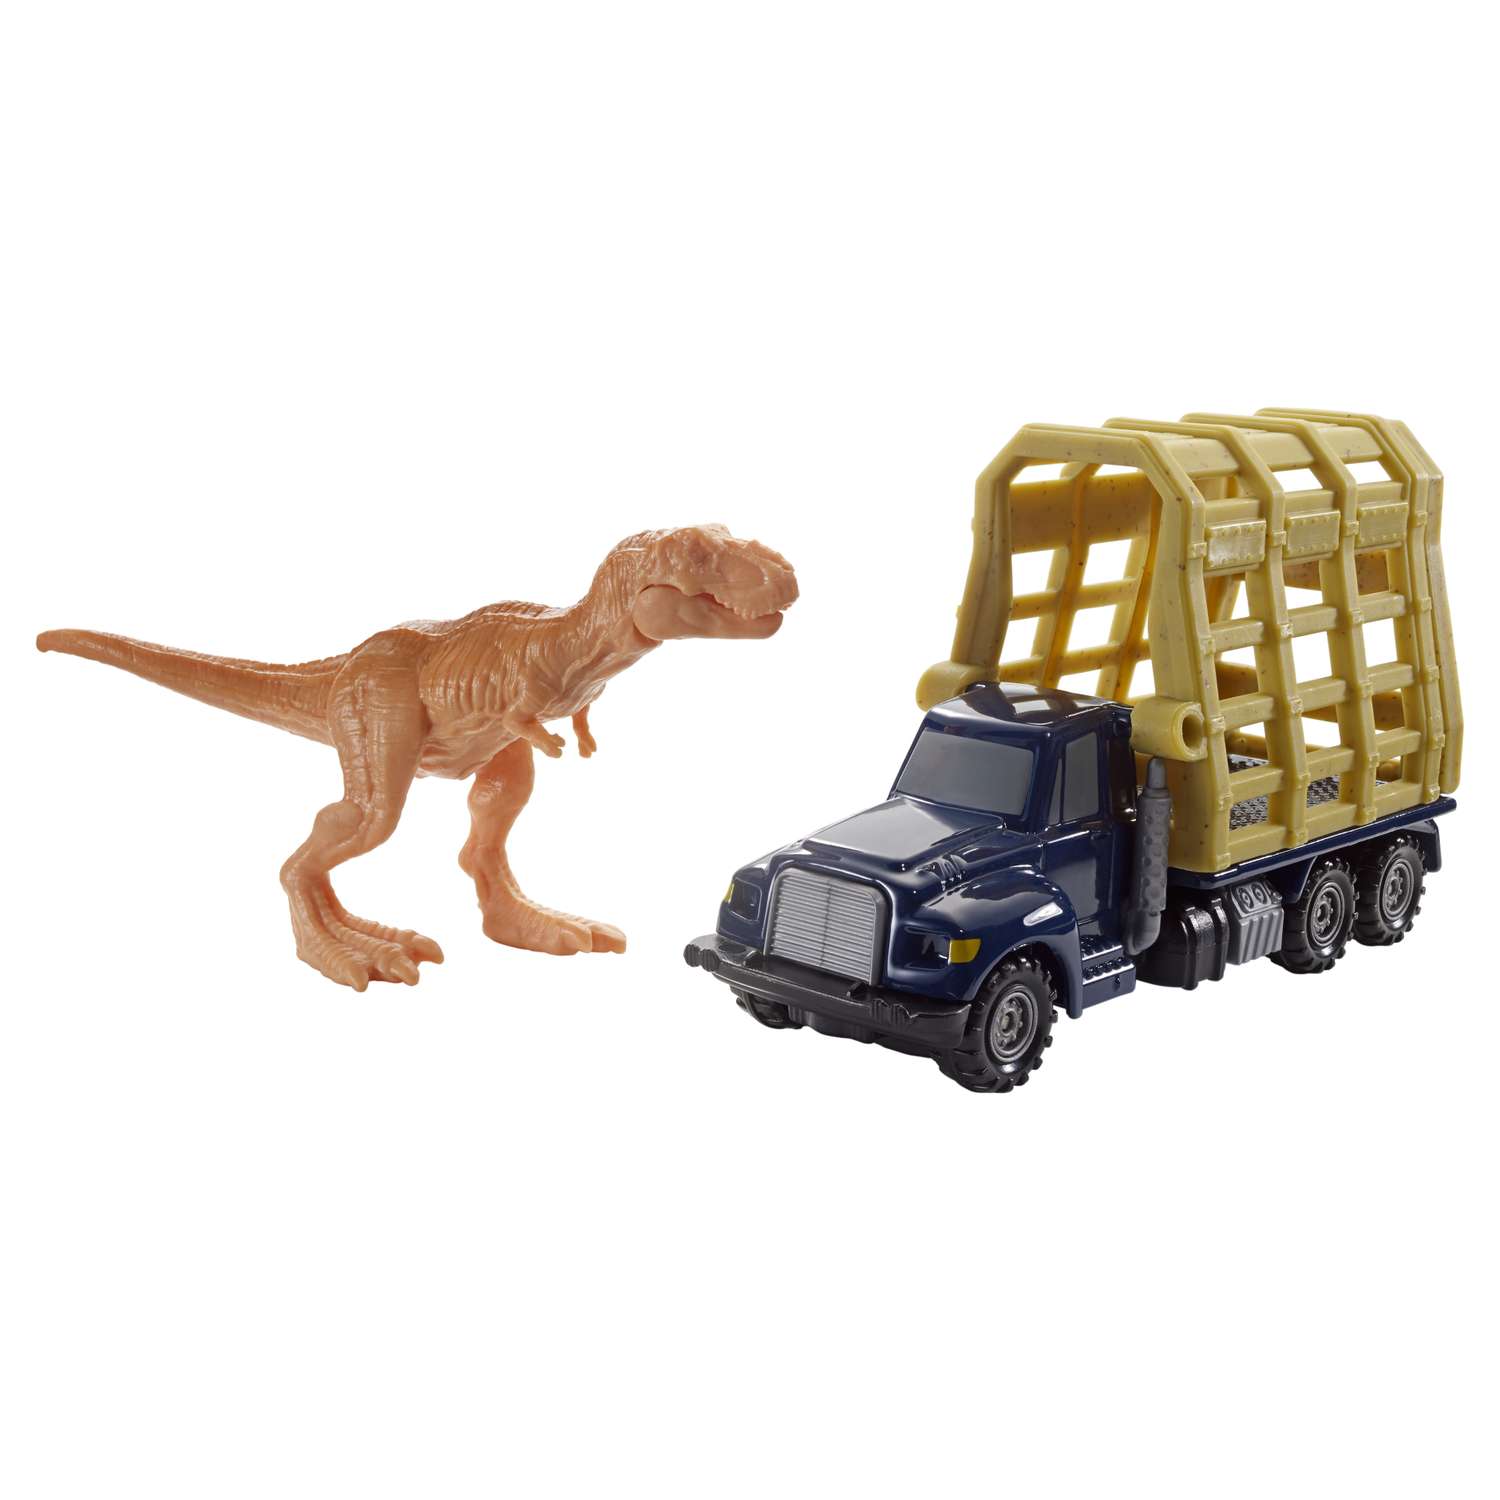 Машинки с динозаврами. Машинки Matchbox Jurassic World. Матчбокс мир Юрского периода. Matchbox Jurassic World фигурки. Mattel Jurassic World машины.